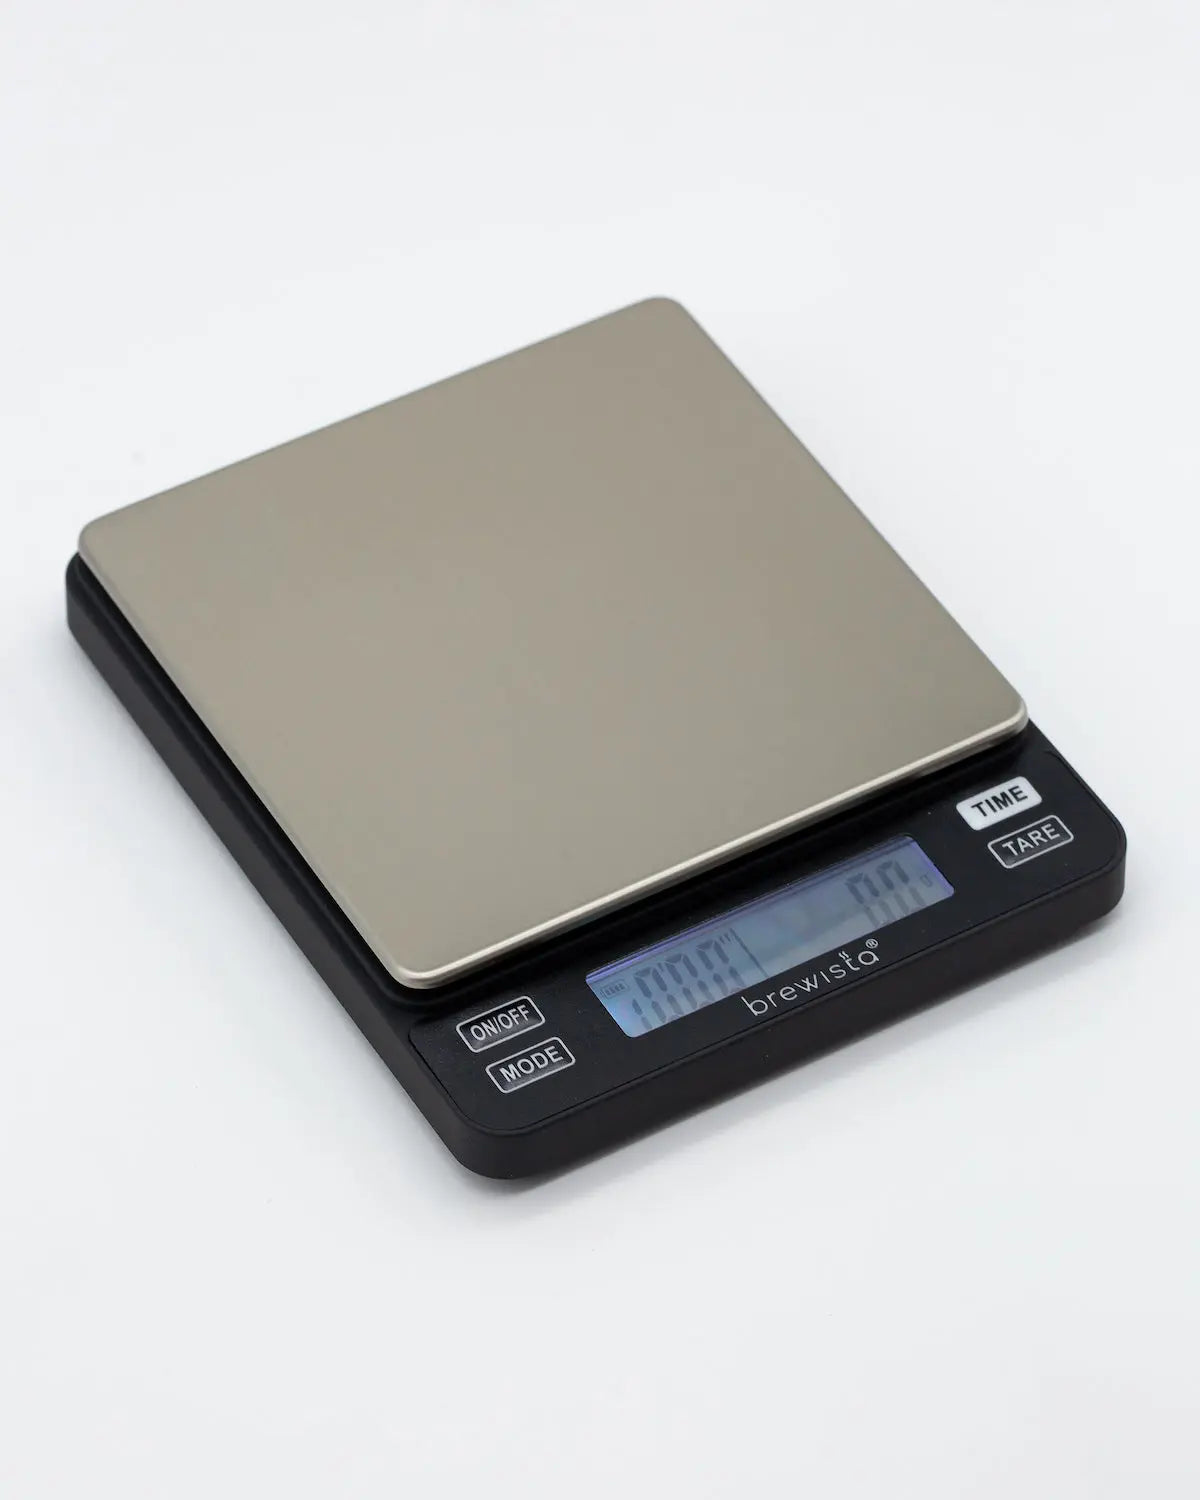  Brewista Smart Scale II for Espresso and Kitchen scale